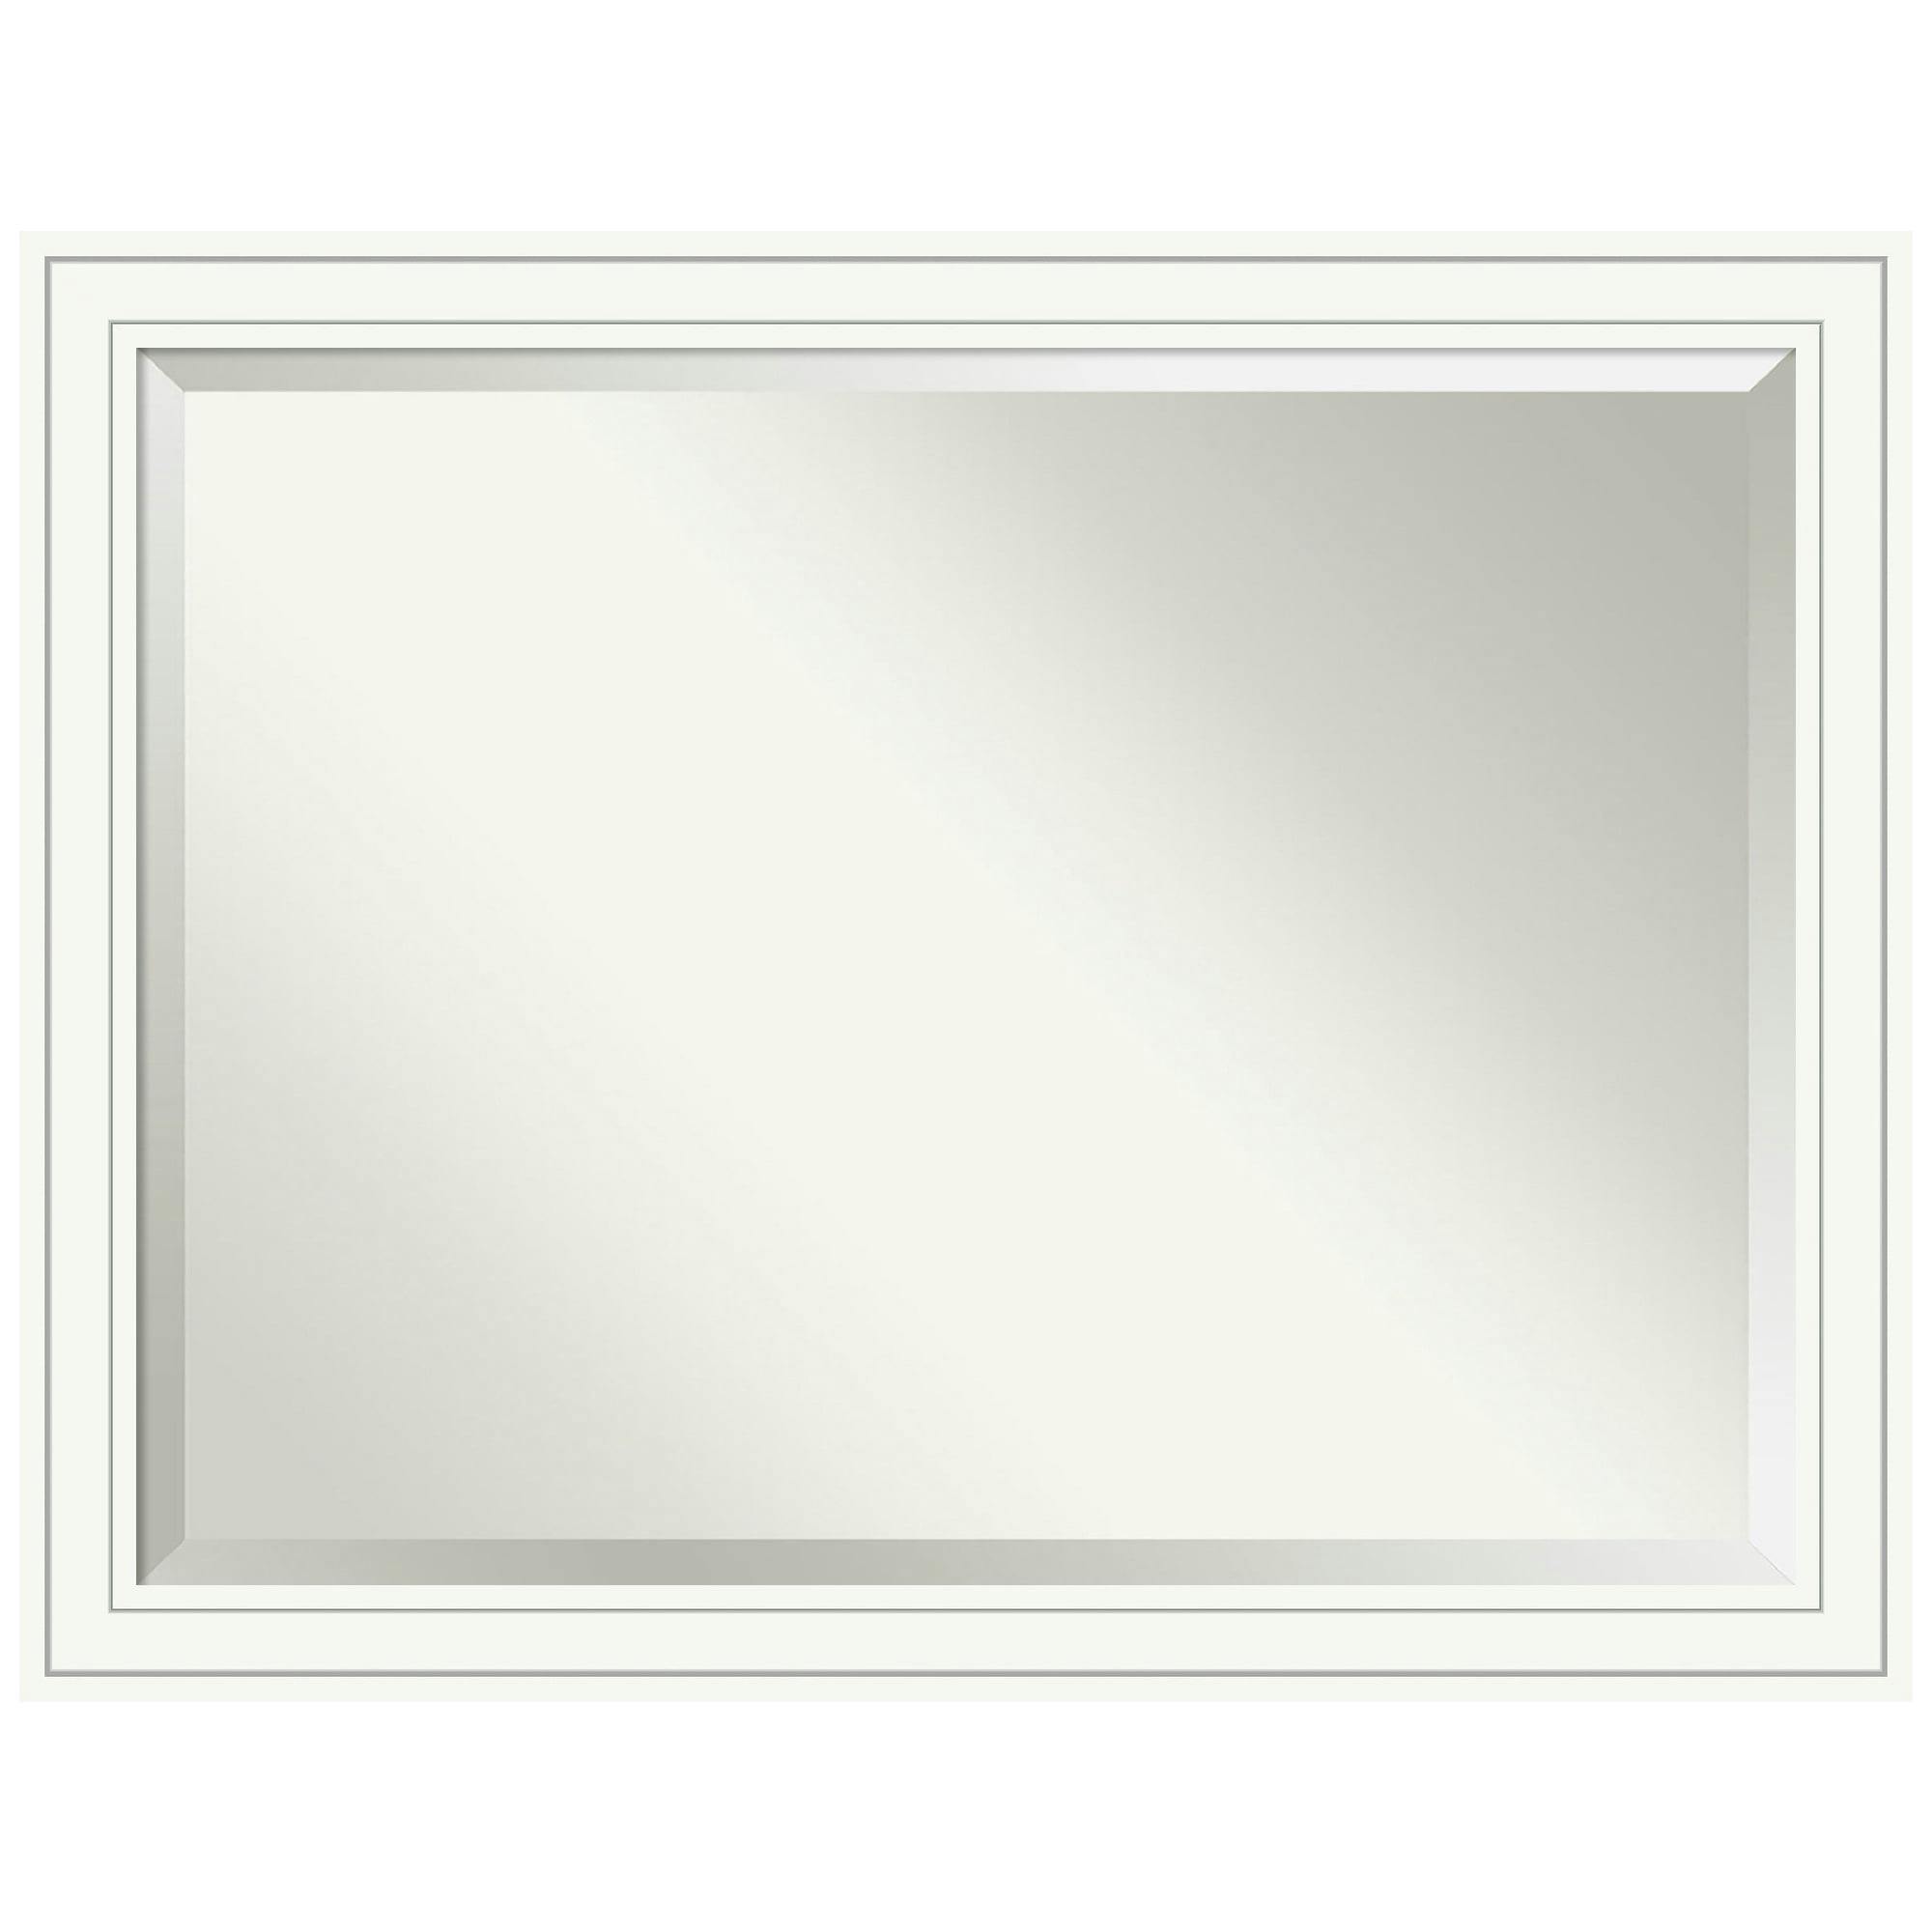 Craftsman Style 45'' Wide Wood Bathroom Vanity Mirror in White